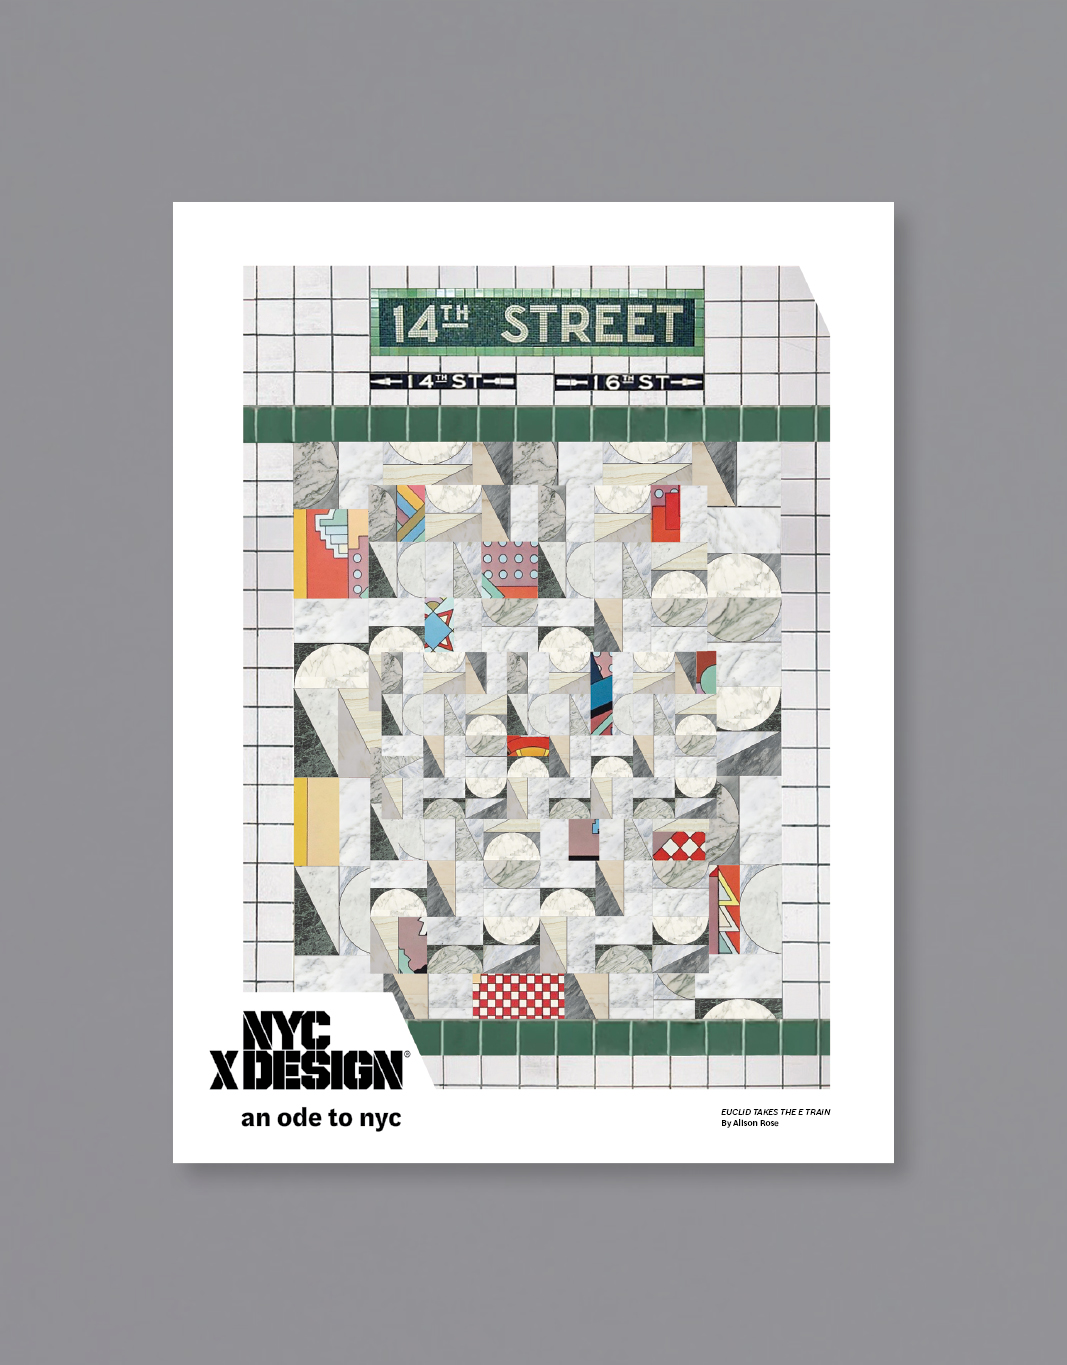 A poster of the New York subway wall mosaic art at 14th Street.